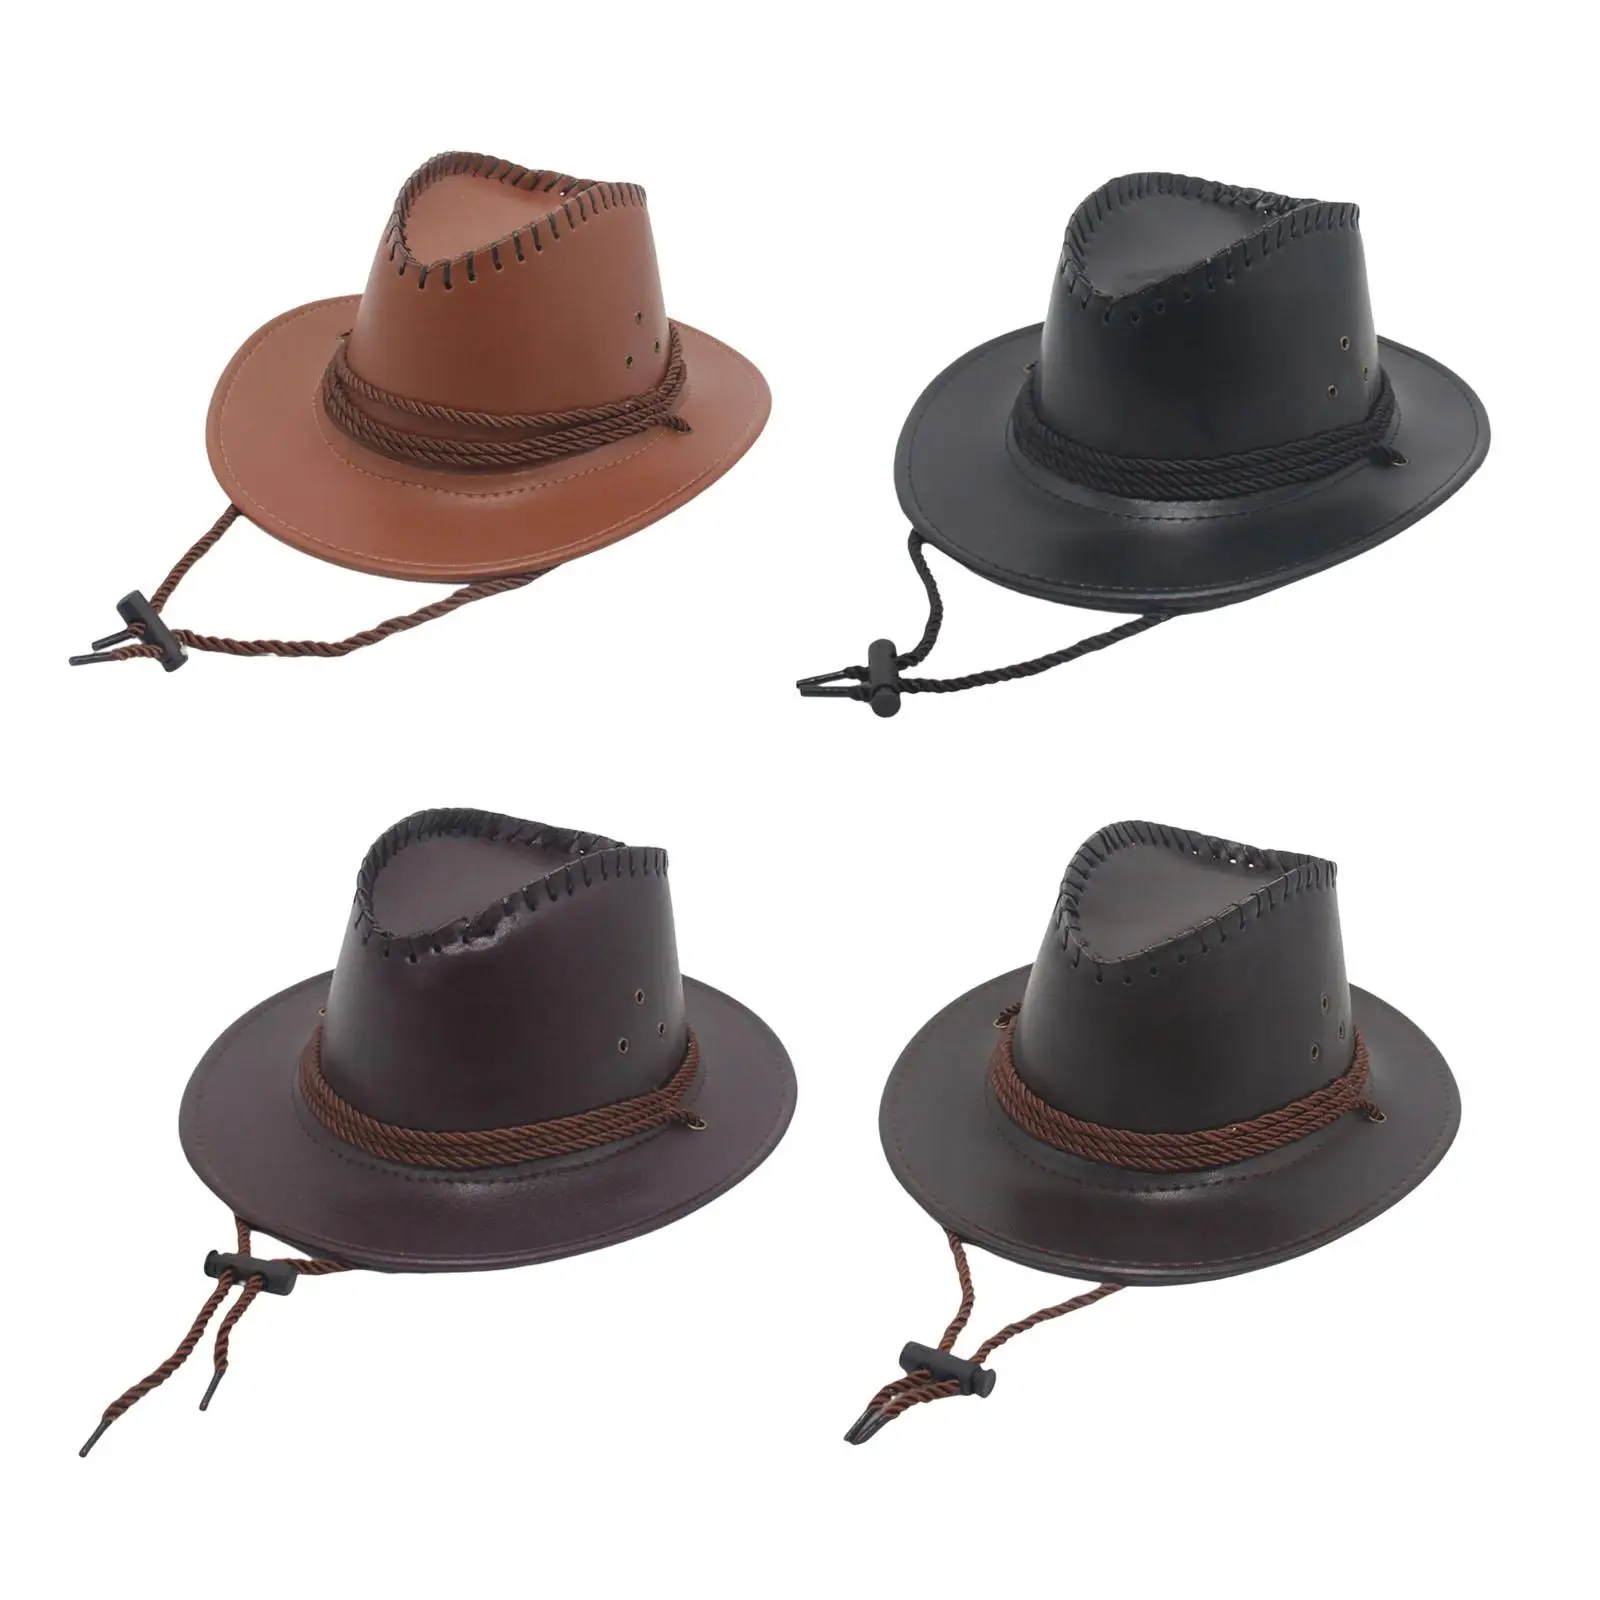 

Ковбойская шляпа в западном стиле со стандартным дизайном для костюма, сувениров для вечеринки